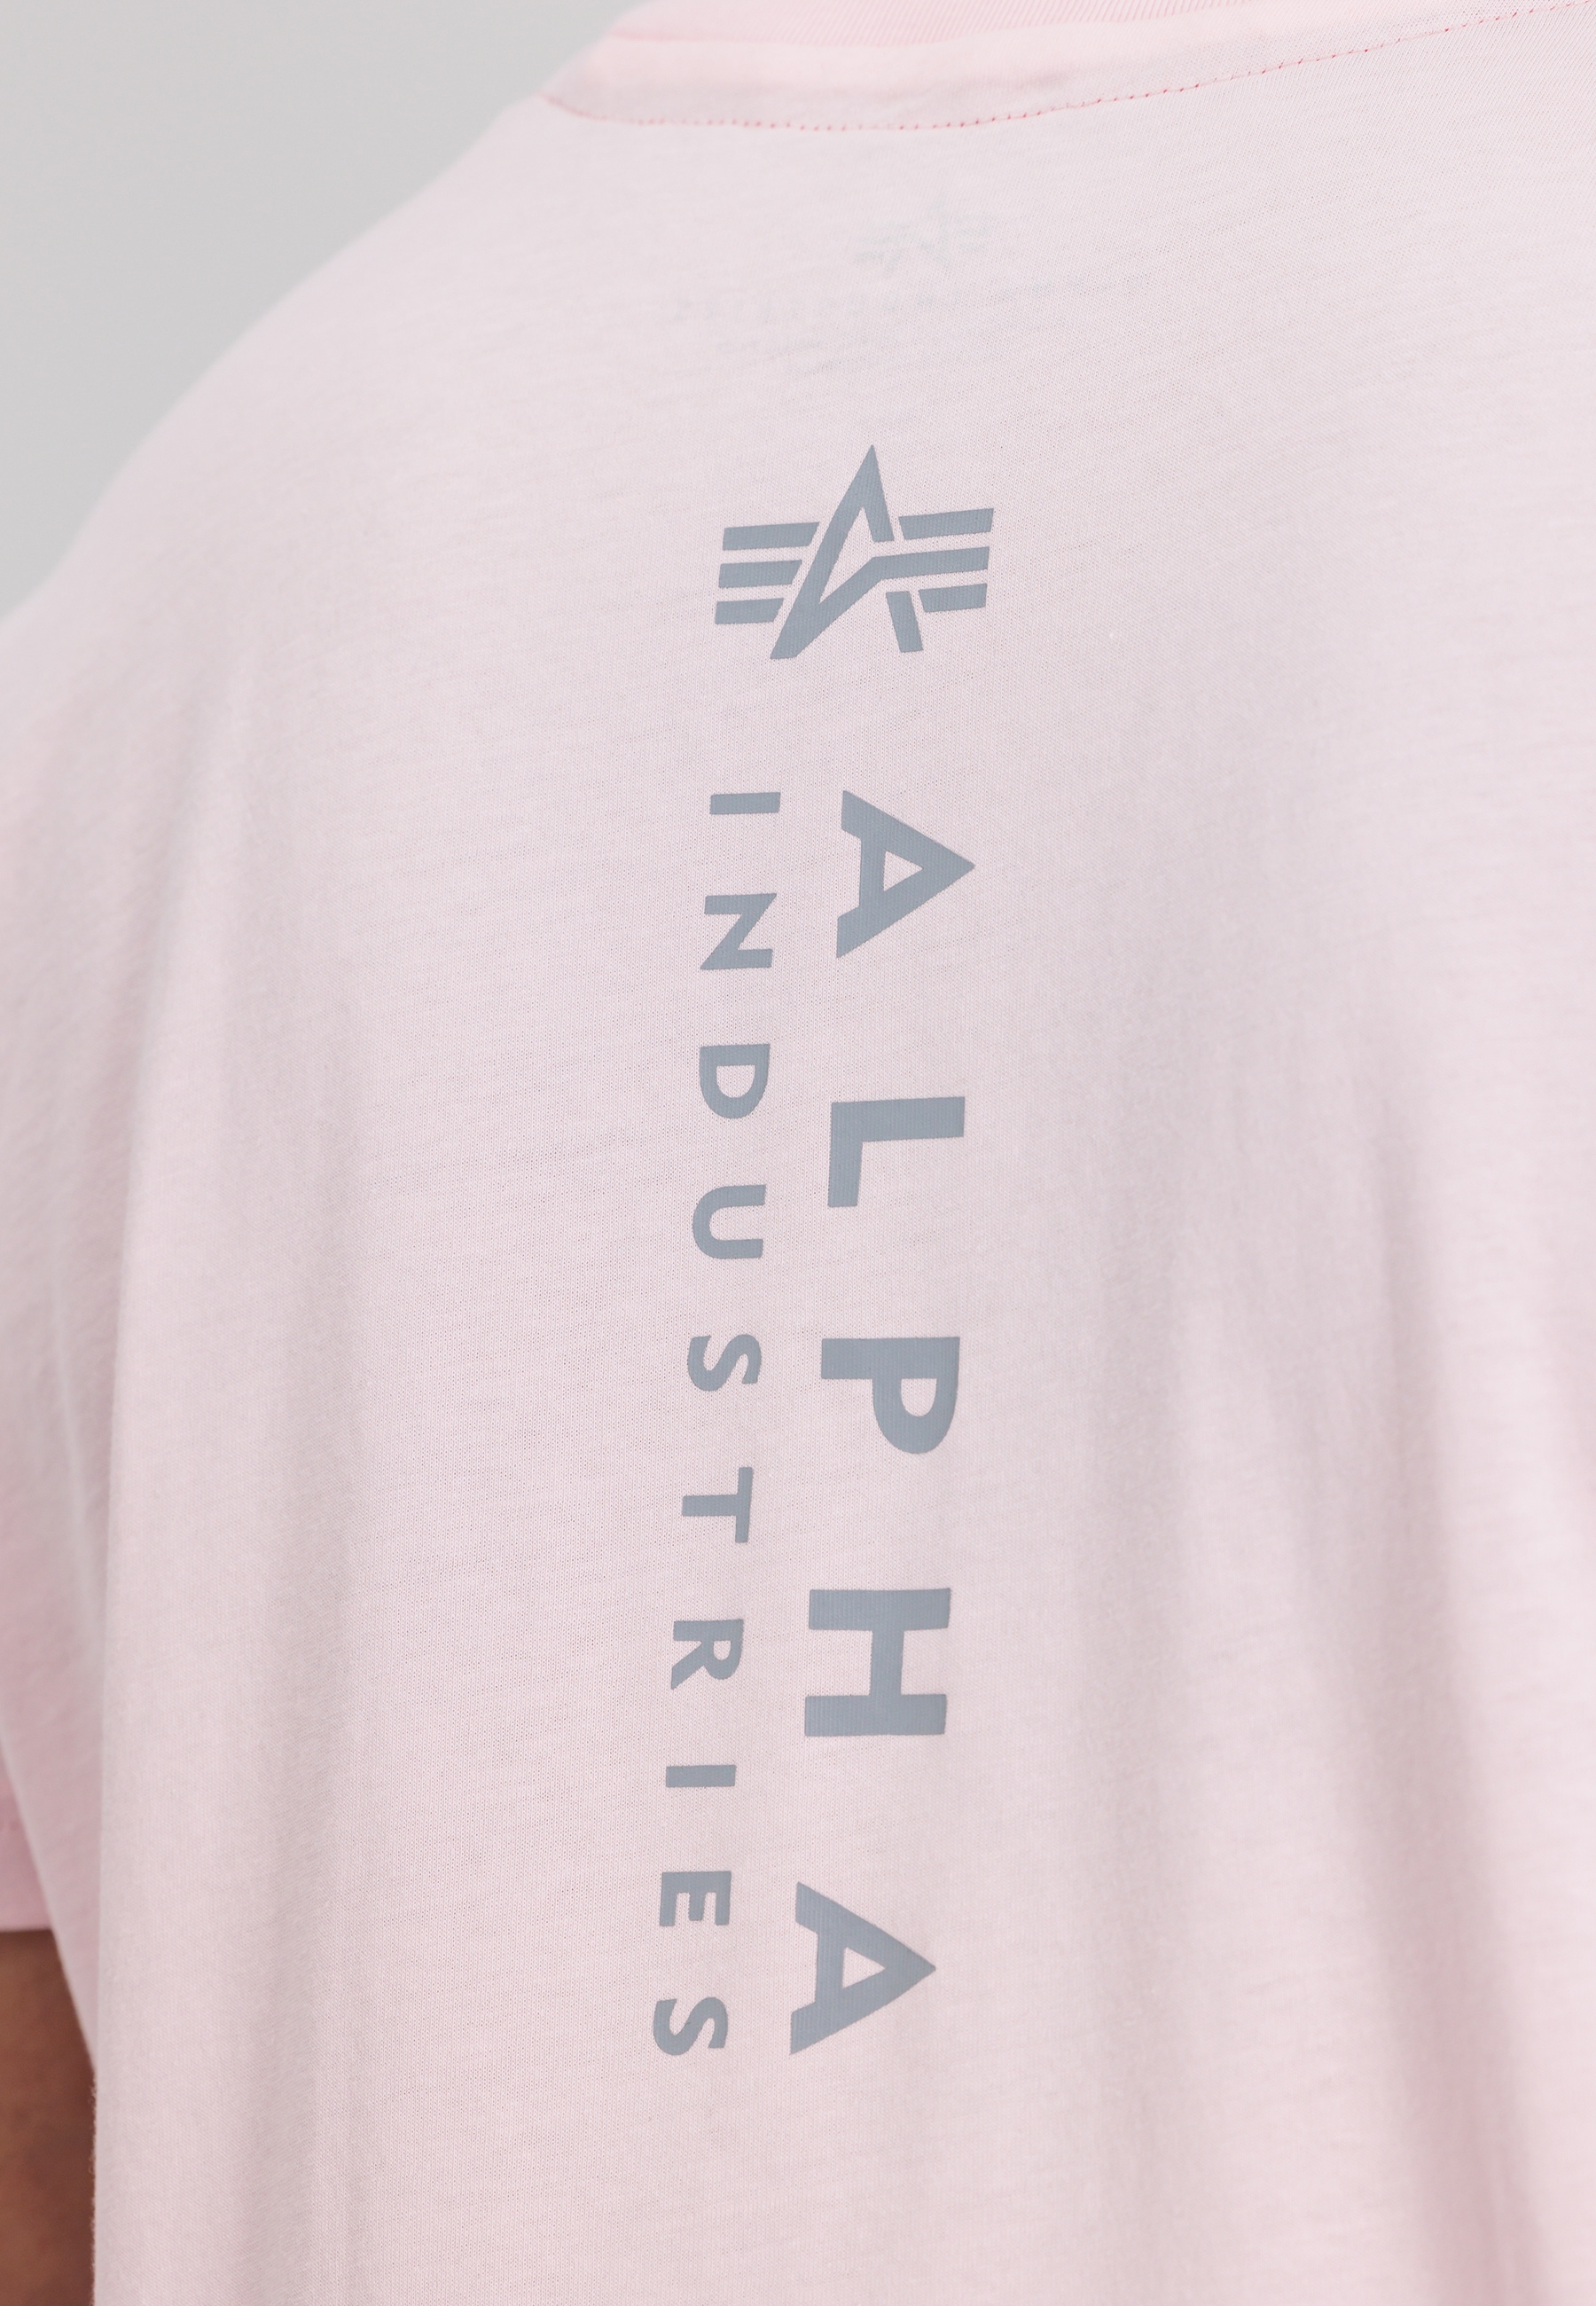 Alpha - »Alpha T-Shirt T-Shirts Industries kaufen T-Shirt« Industries Unisex Men EMB